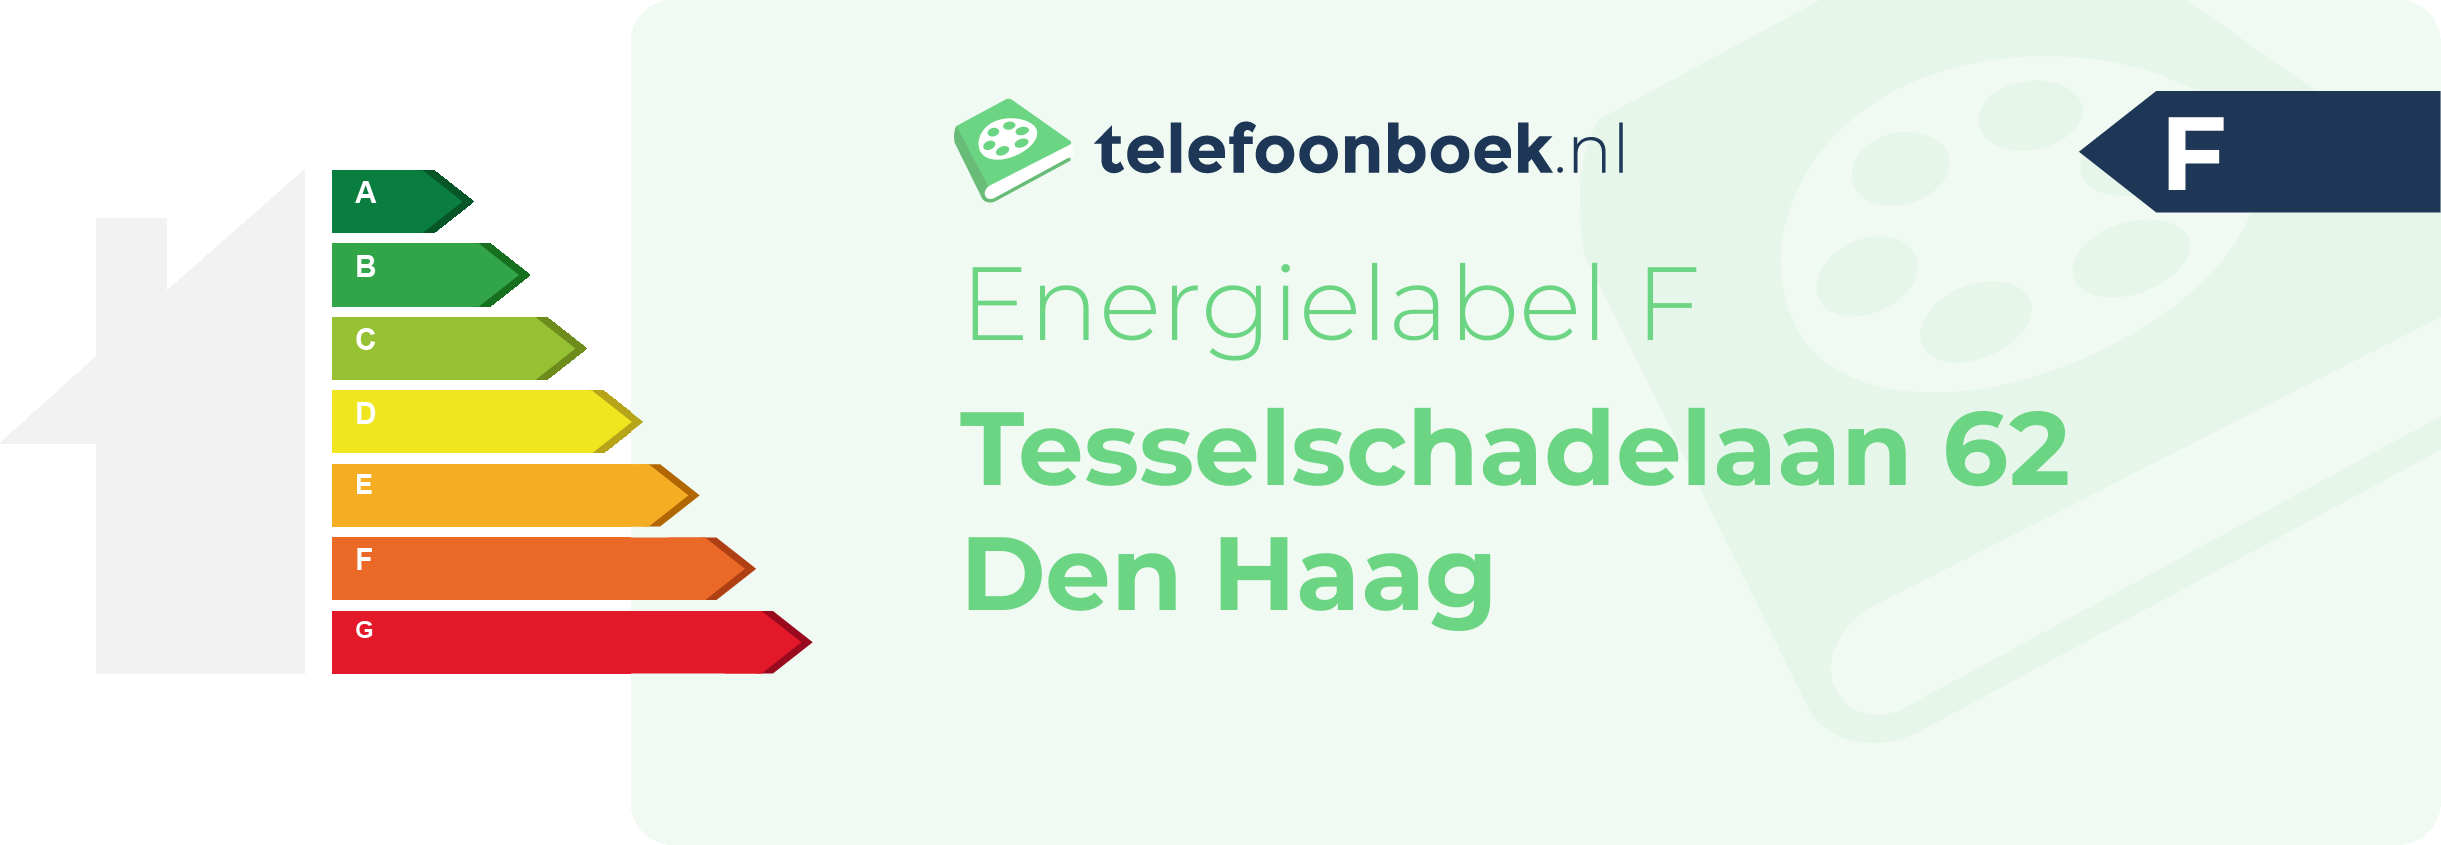 Energielabel Tesselschadelaan 62 Den Haag